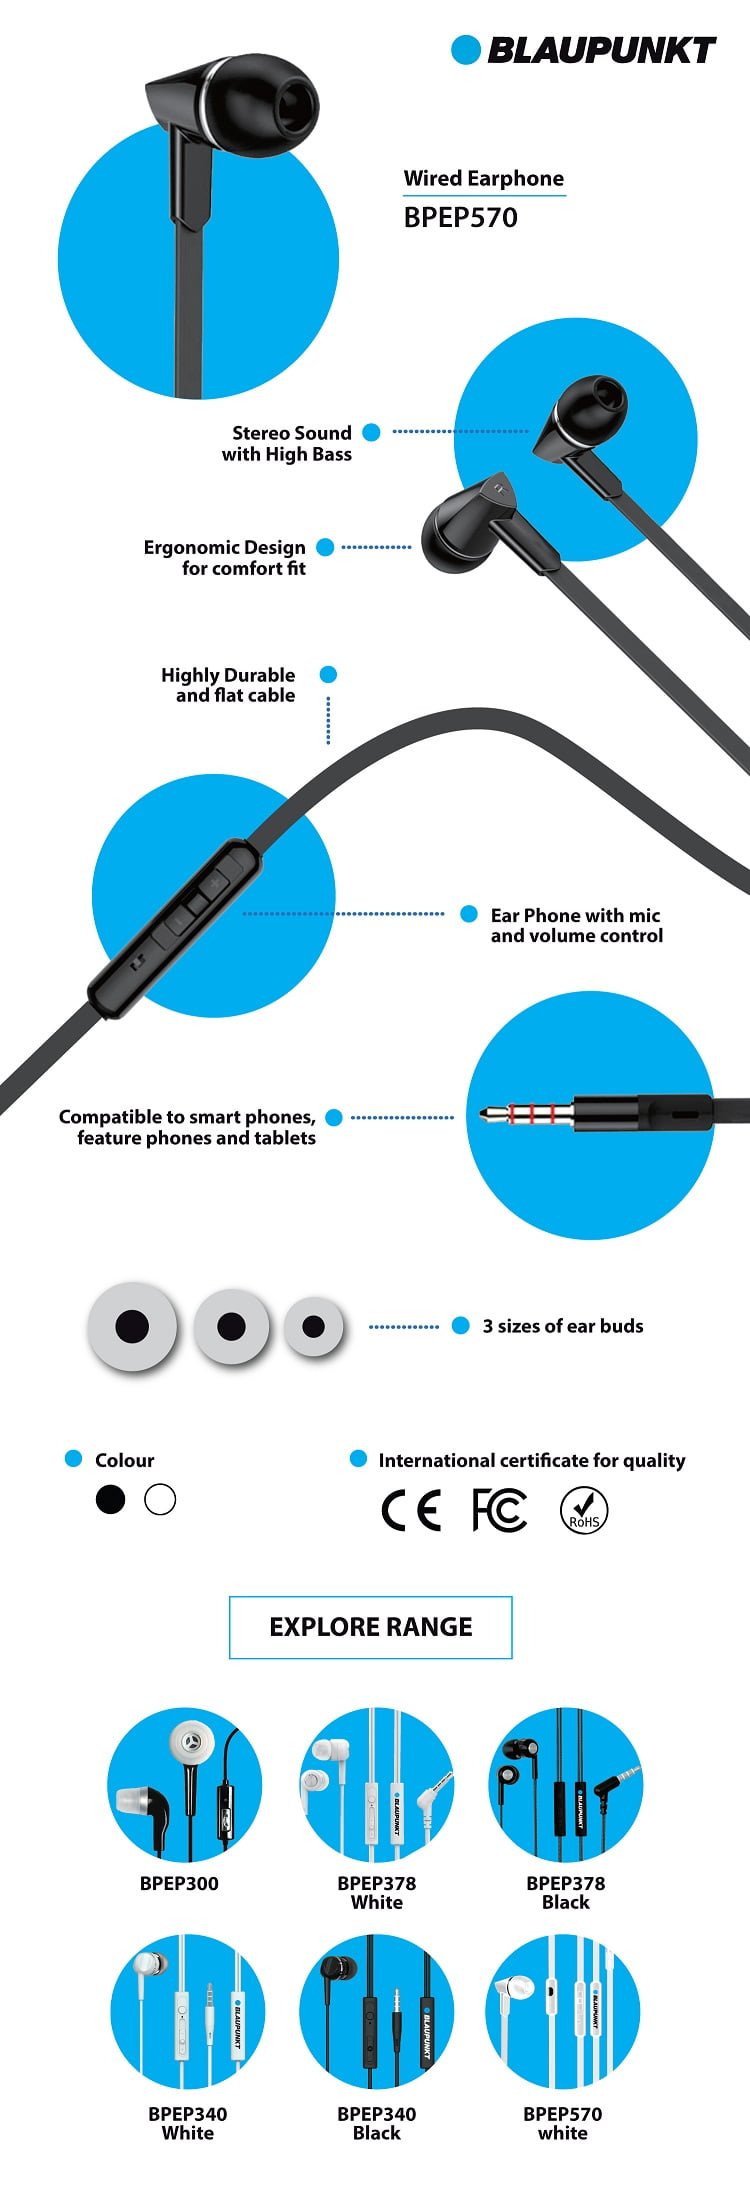 blaupunkt-earphone